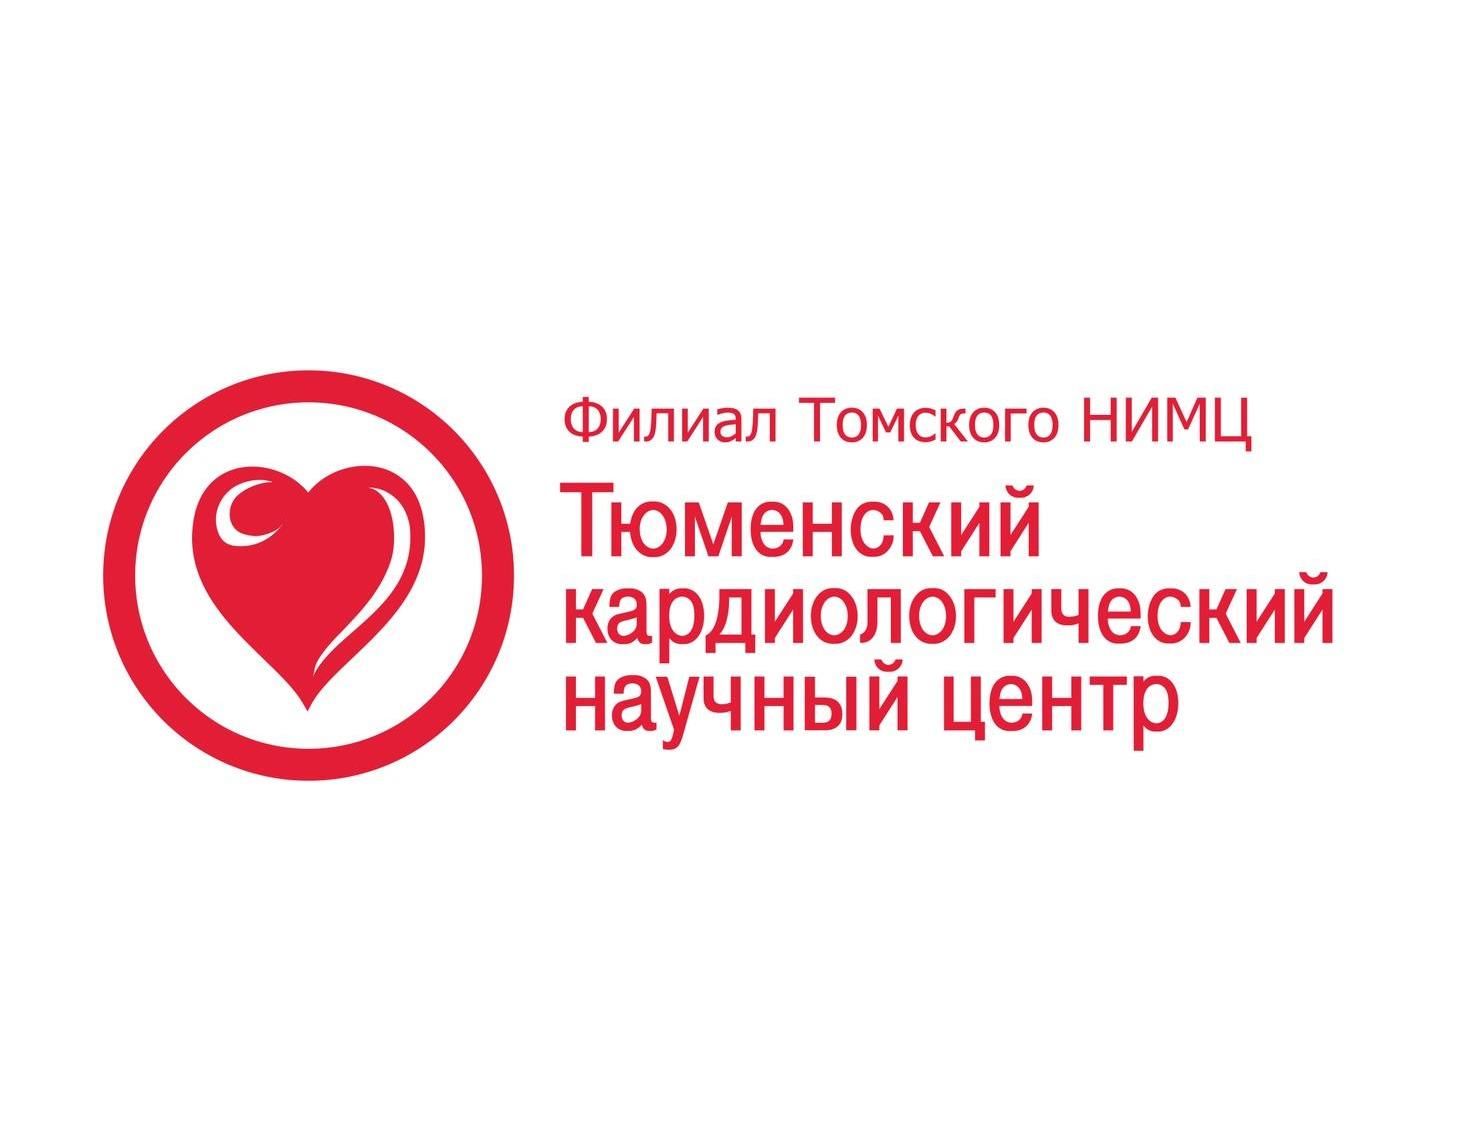 Международный конгресс Европейского общества кардиологов «Сердечная недостаточность 2013» (Heart Failure 2013)